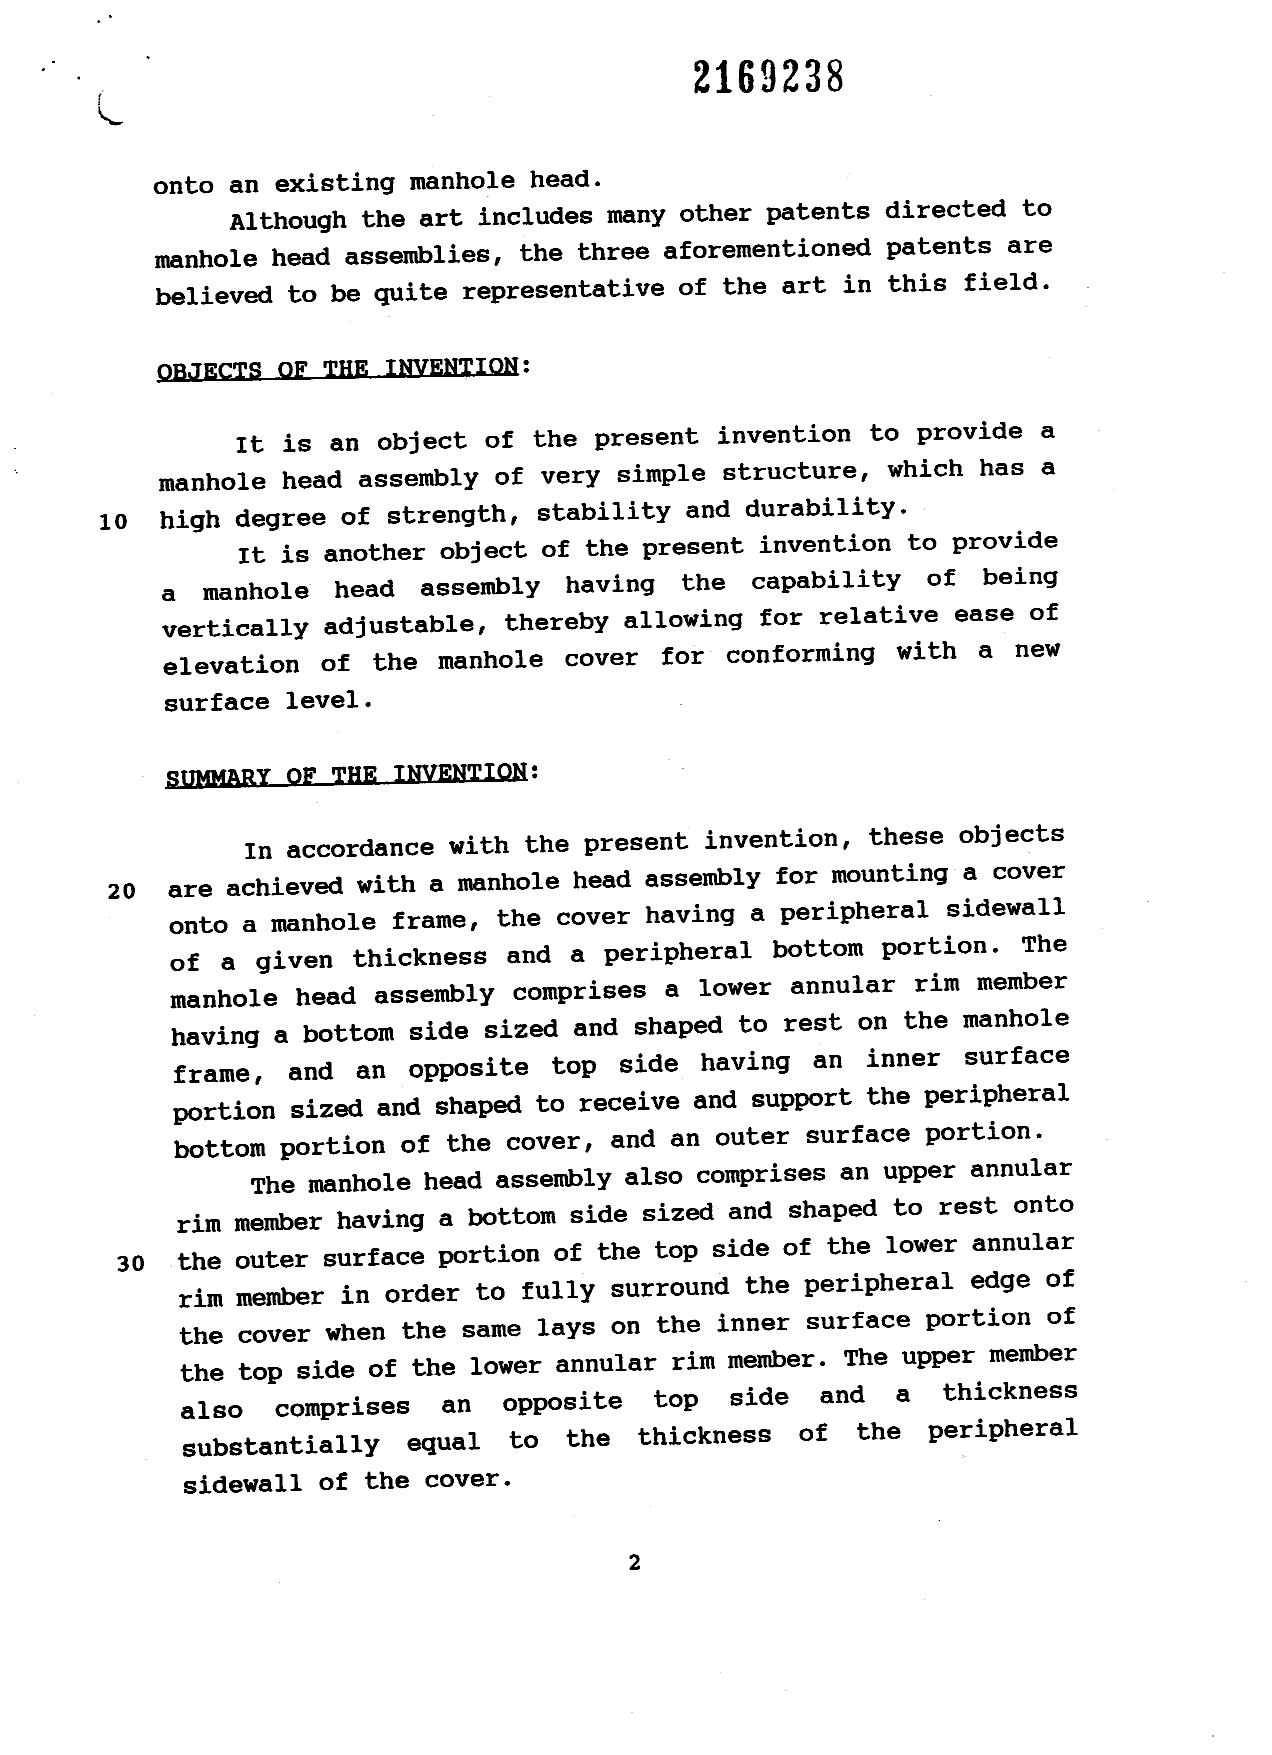 Canadian Patent Document 2169238. Description 19960531. Image 2 of 8